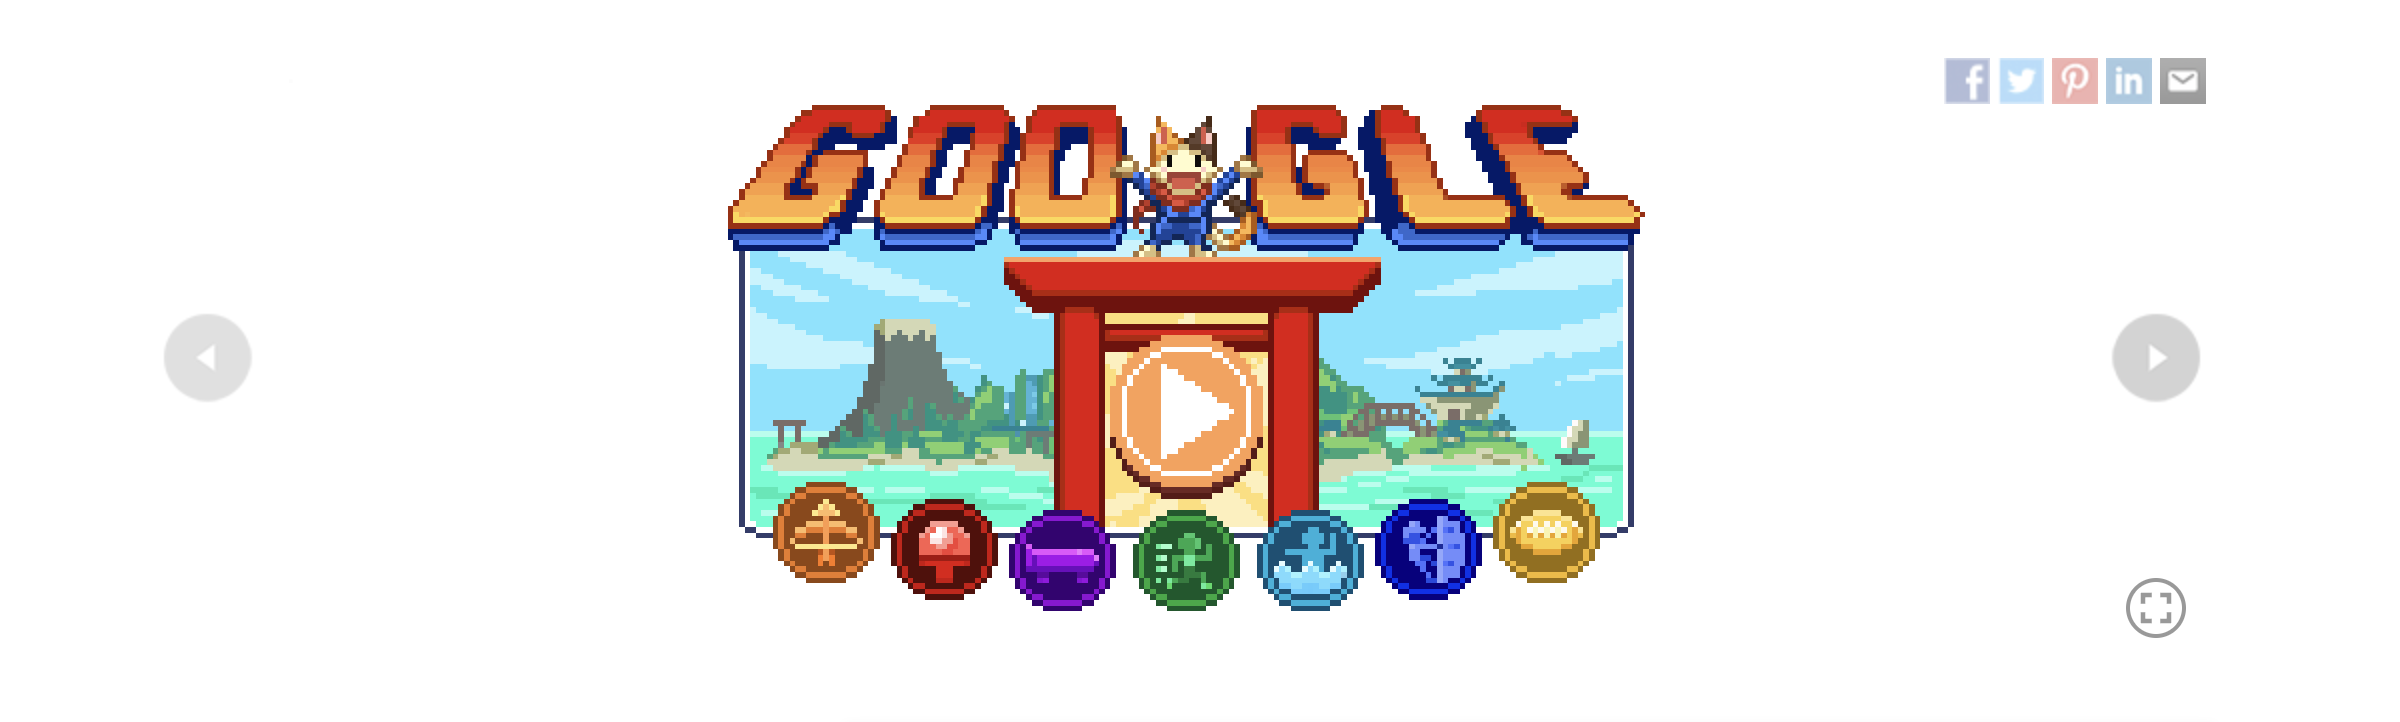 Halloween 2016 Google Doodle - Halloween 2016 Doodle Game (Level 1 - 20)